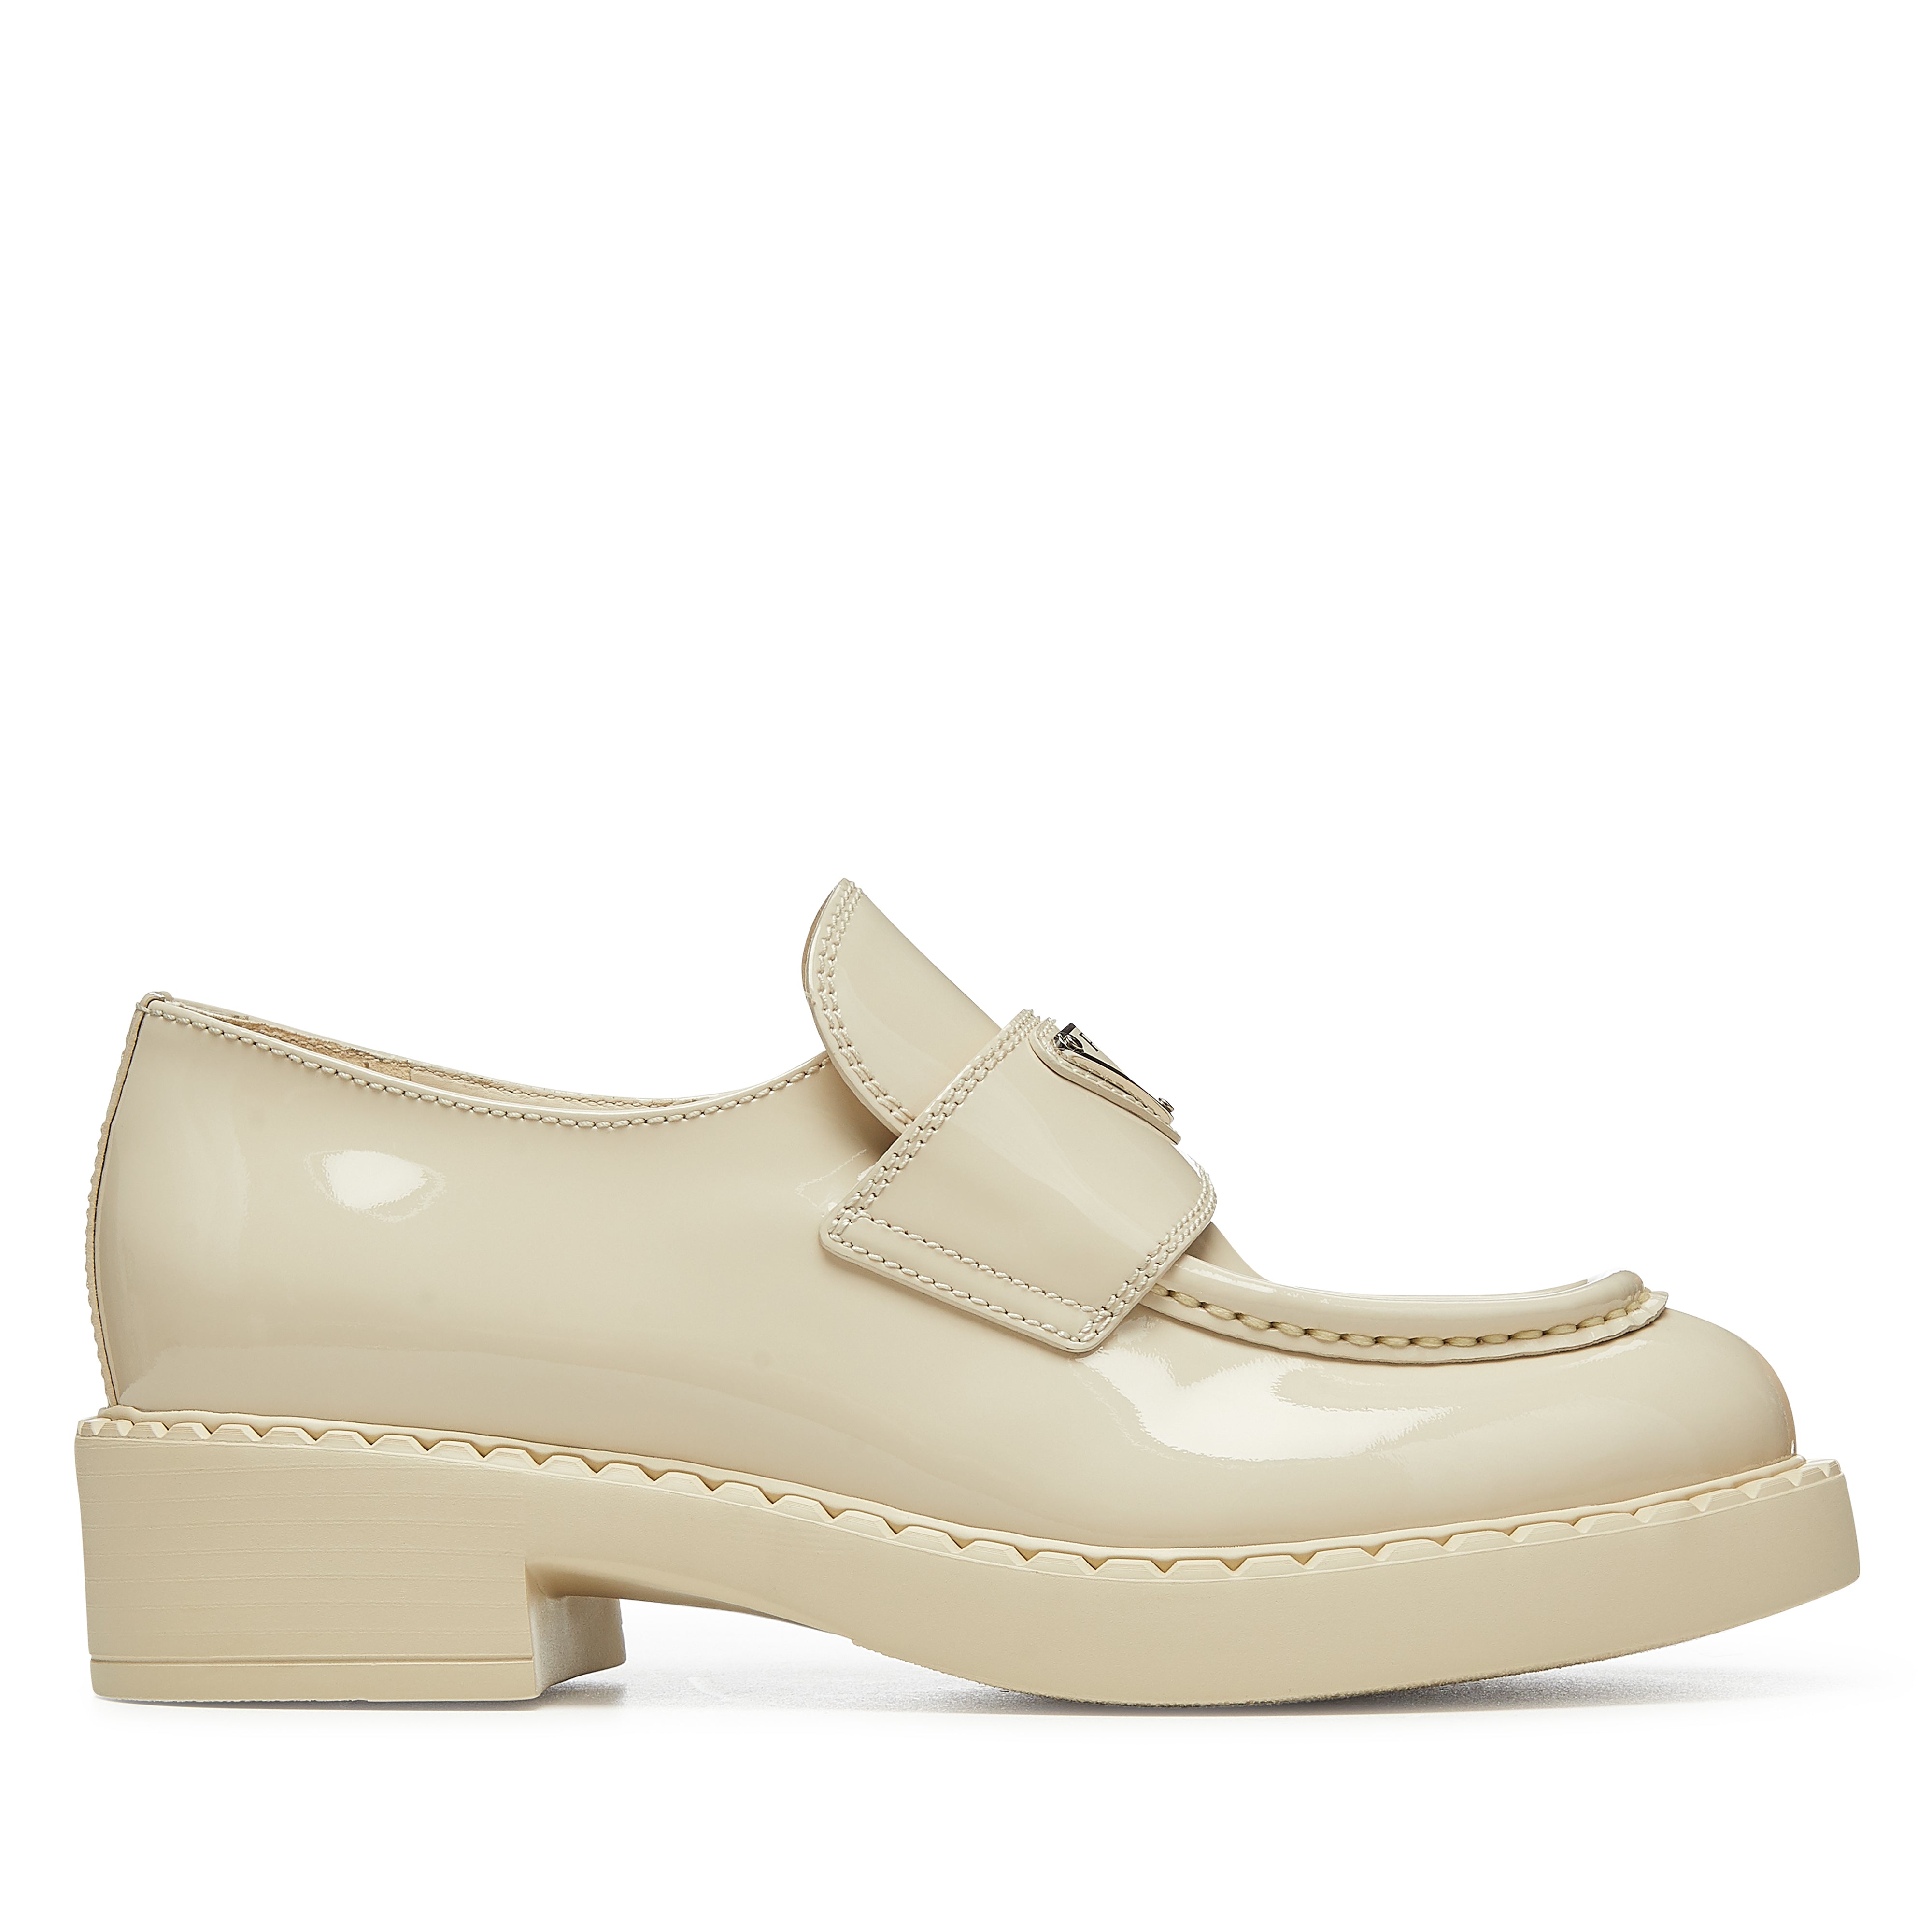 Prada - Women's Loafers - (Ivory) – DSMNY E-SHOP